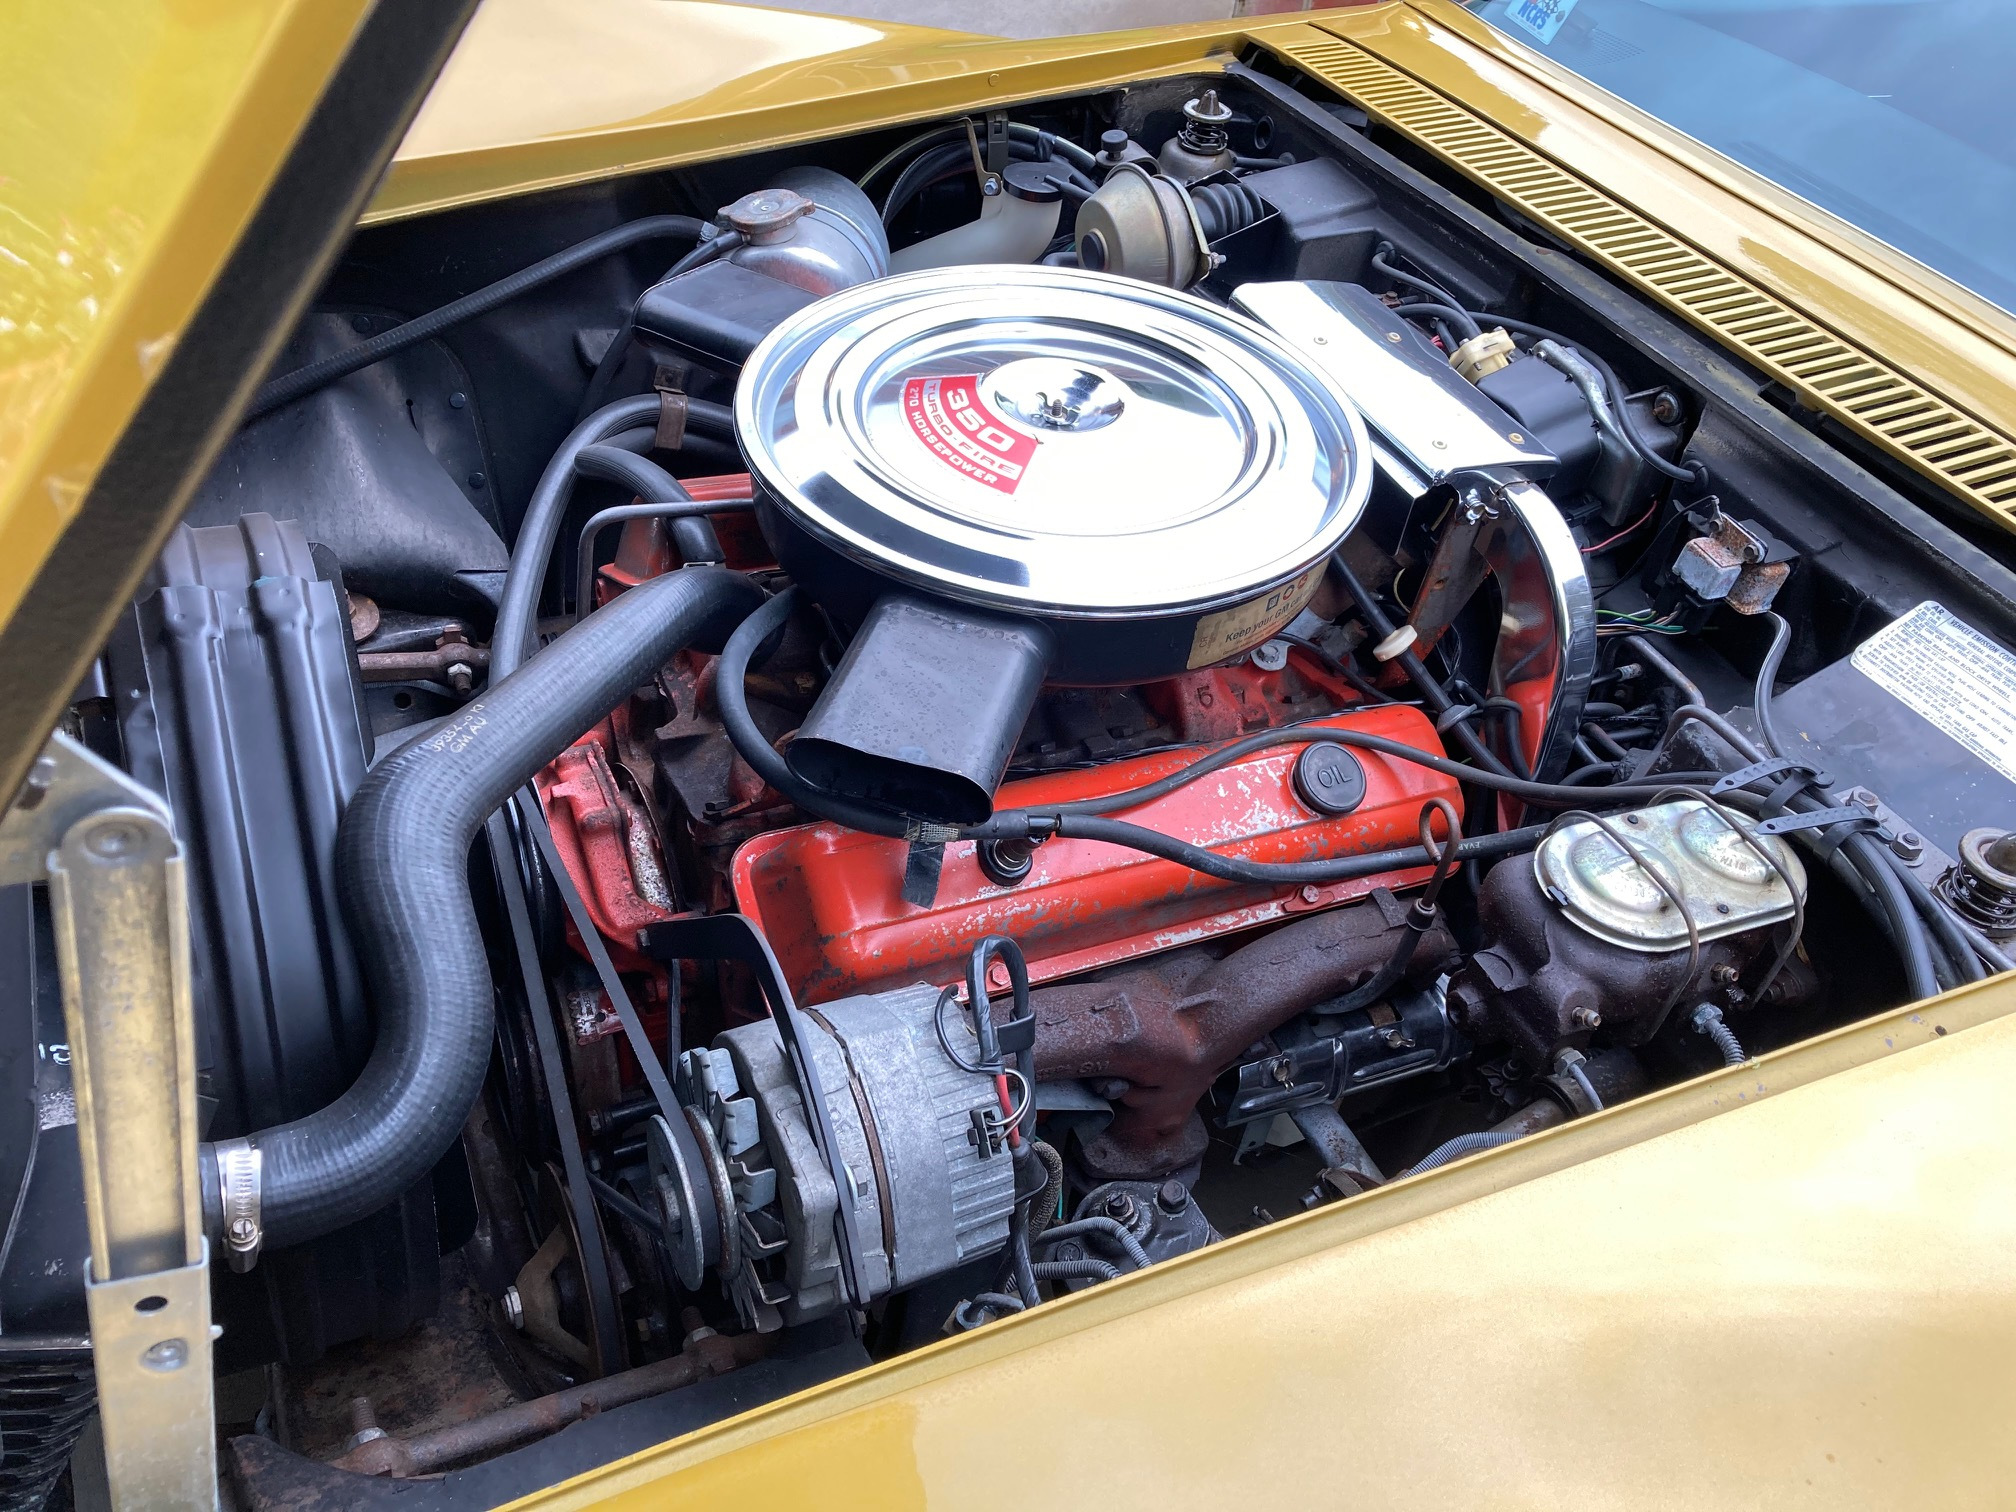 1971 Corvette - War Bonnet Yellow